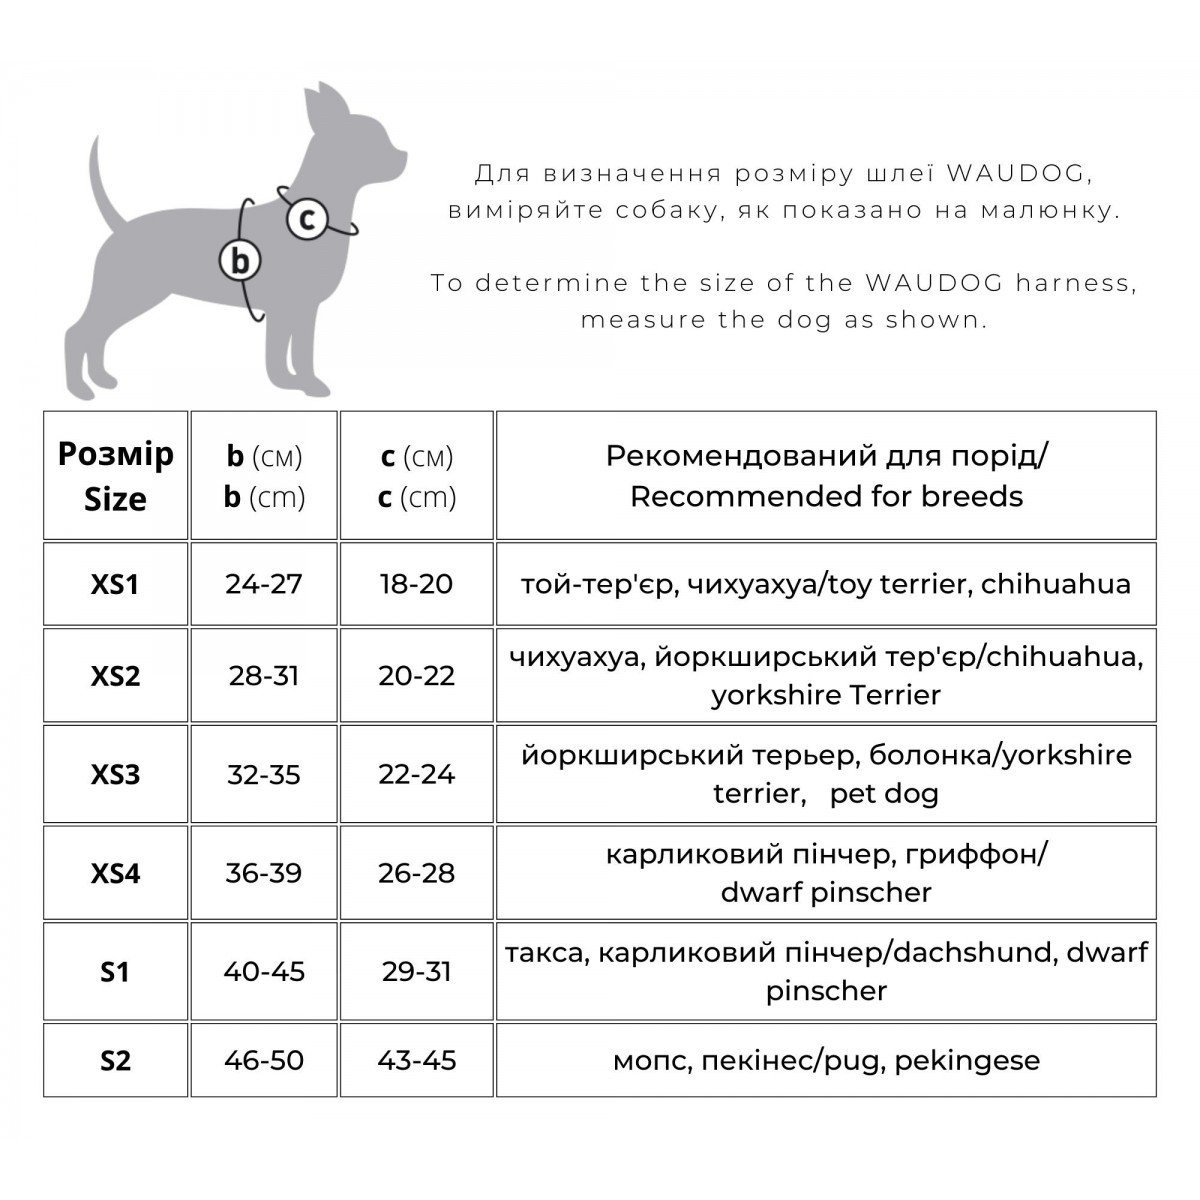 Шлея для собак м'яка Waudog Clothes, з QR паспортом, Авокадо, XS4, 36-39х26-28 см - фото 4